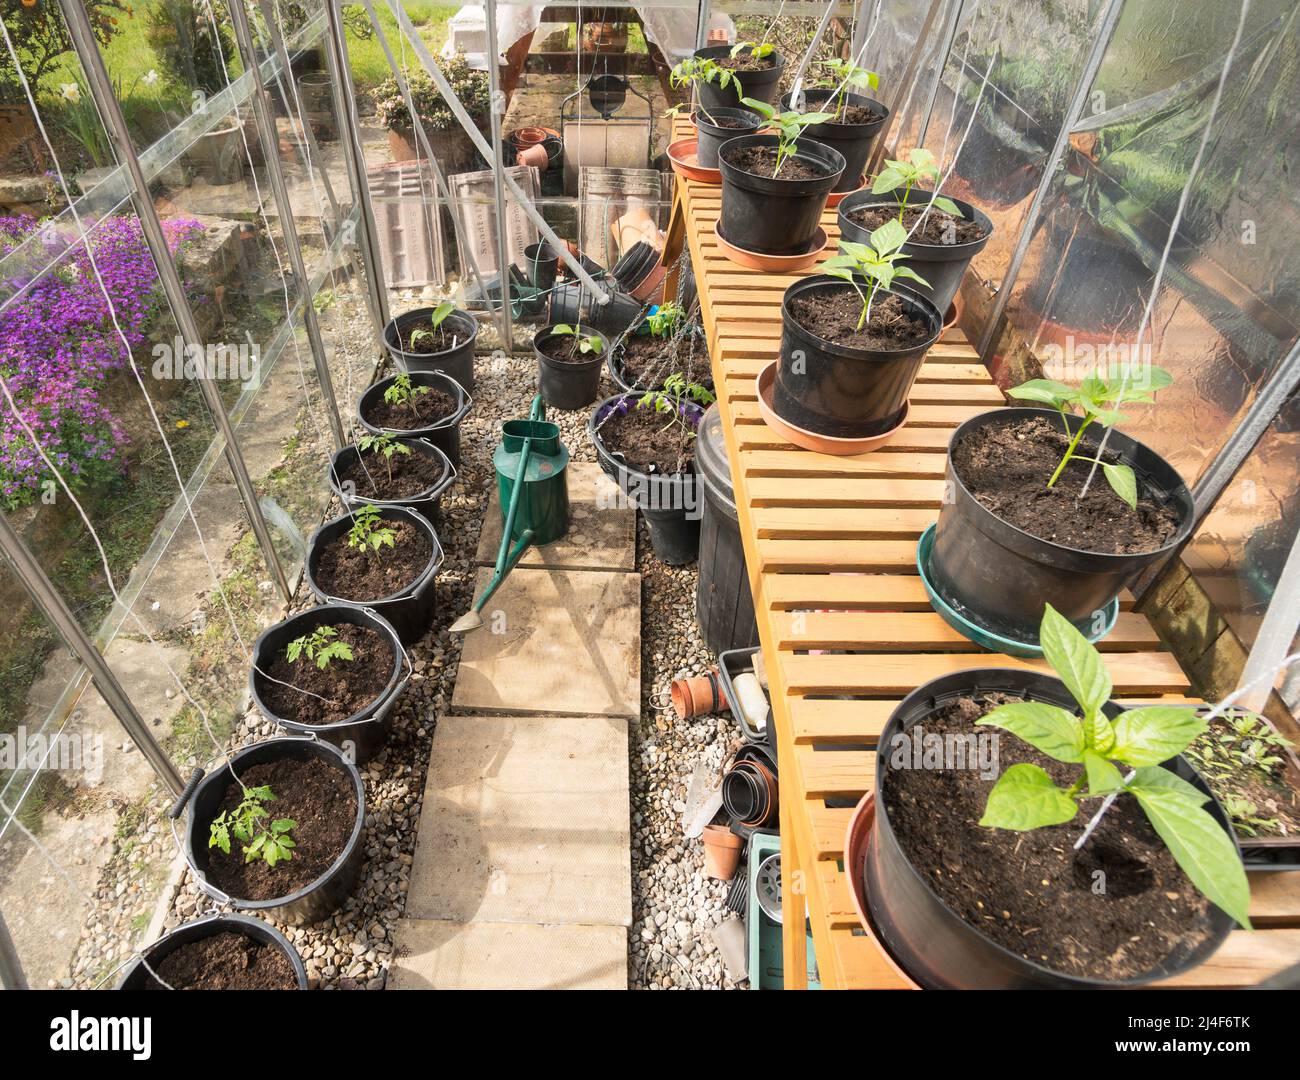 Junge Tomaten- und Pfefferpflanzen, die in einem Gewächshaus eines Hobbygärtners wachsen, England, Großbritannien Stockfoto